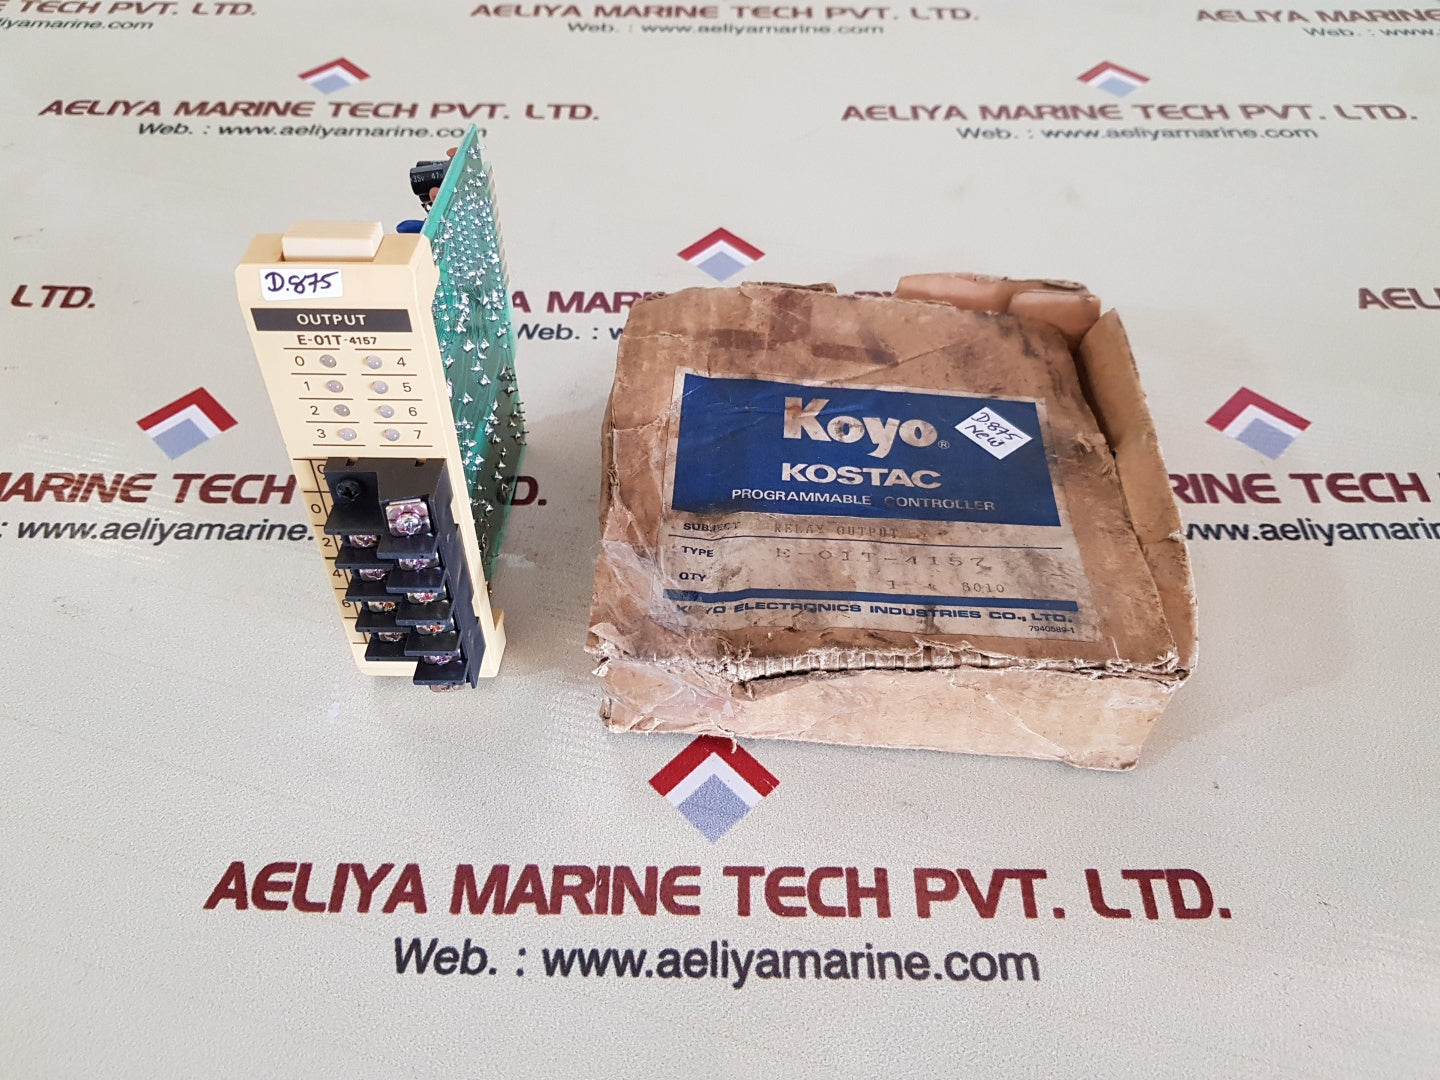 Koyo e-01t-4157 relay output programmable controller